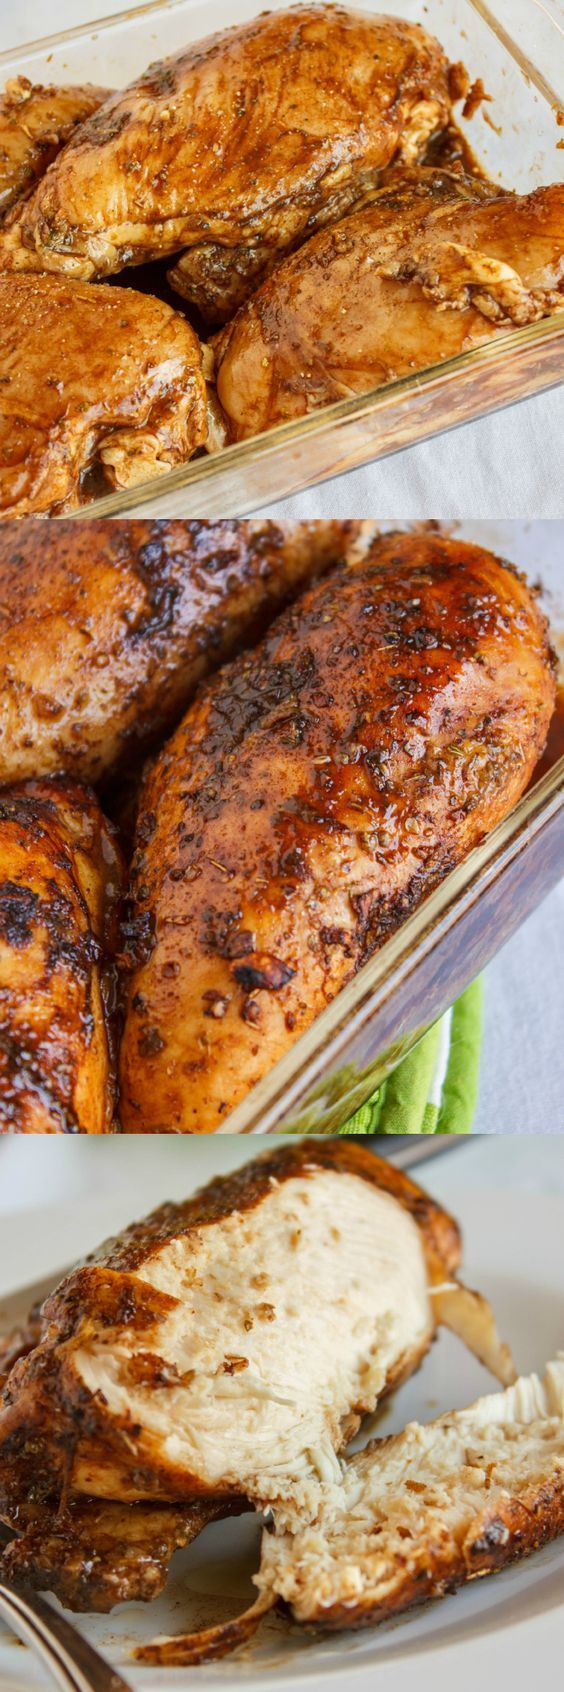 Baked Chicken Breast Ideas
 Baked Balsamic Chicken Recipe